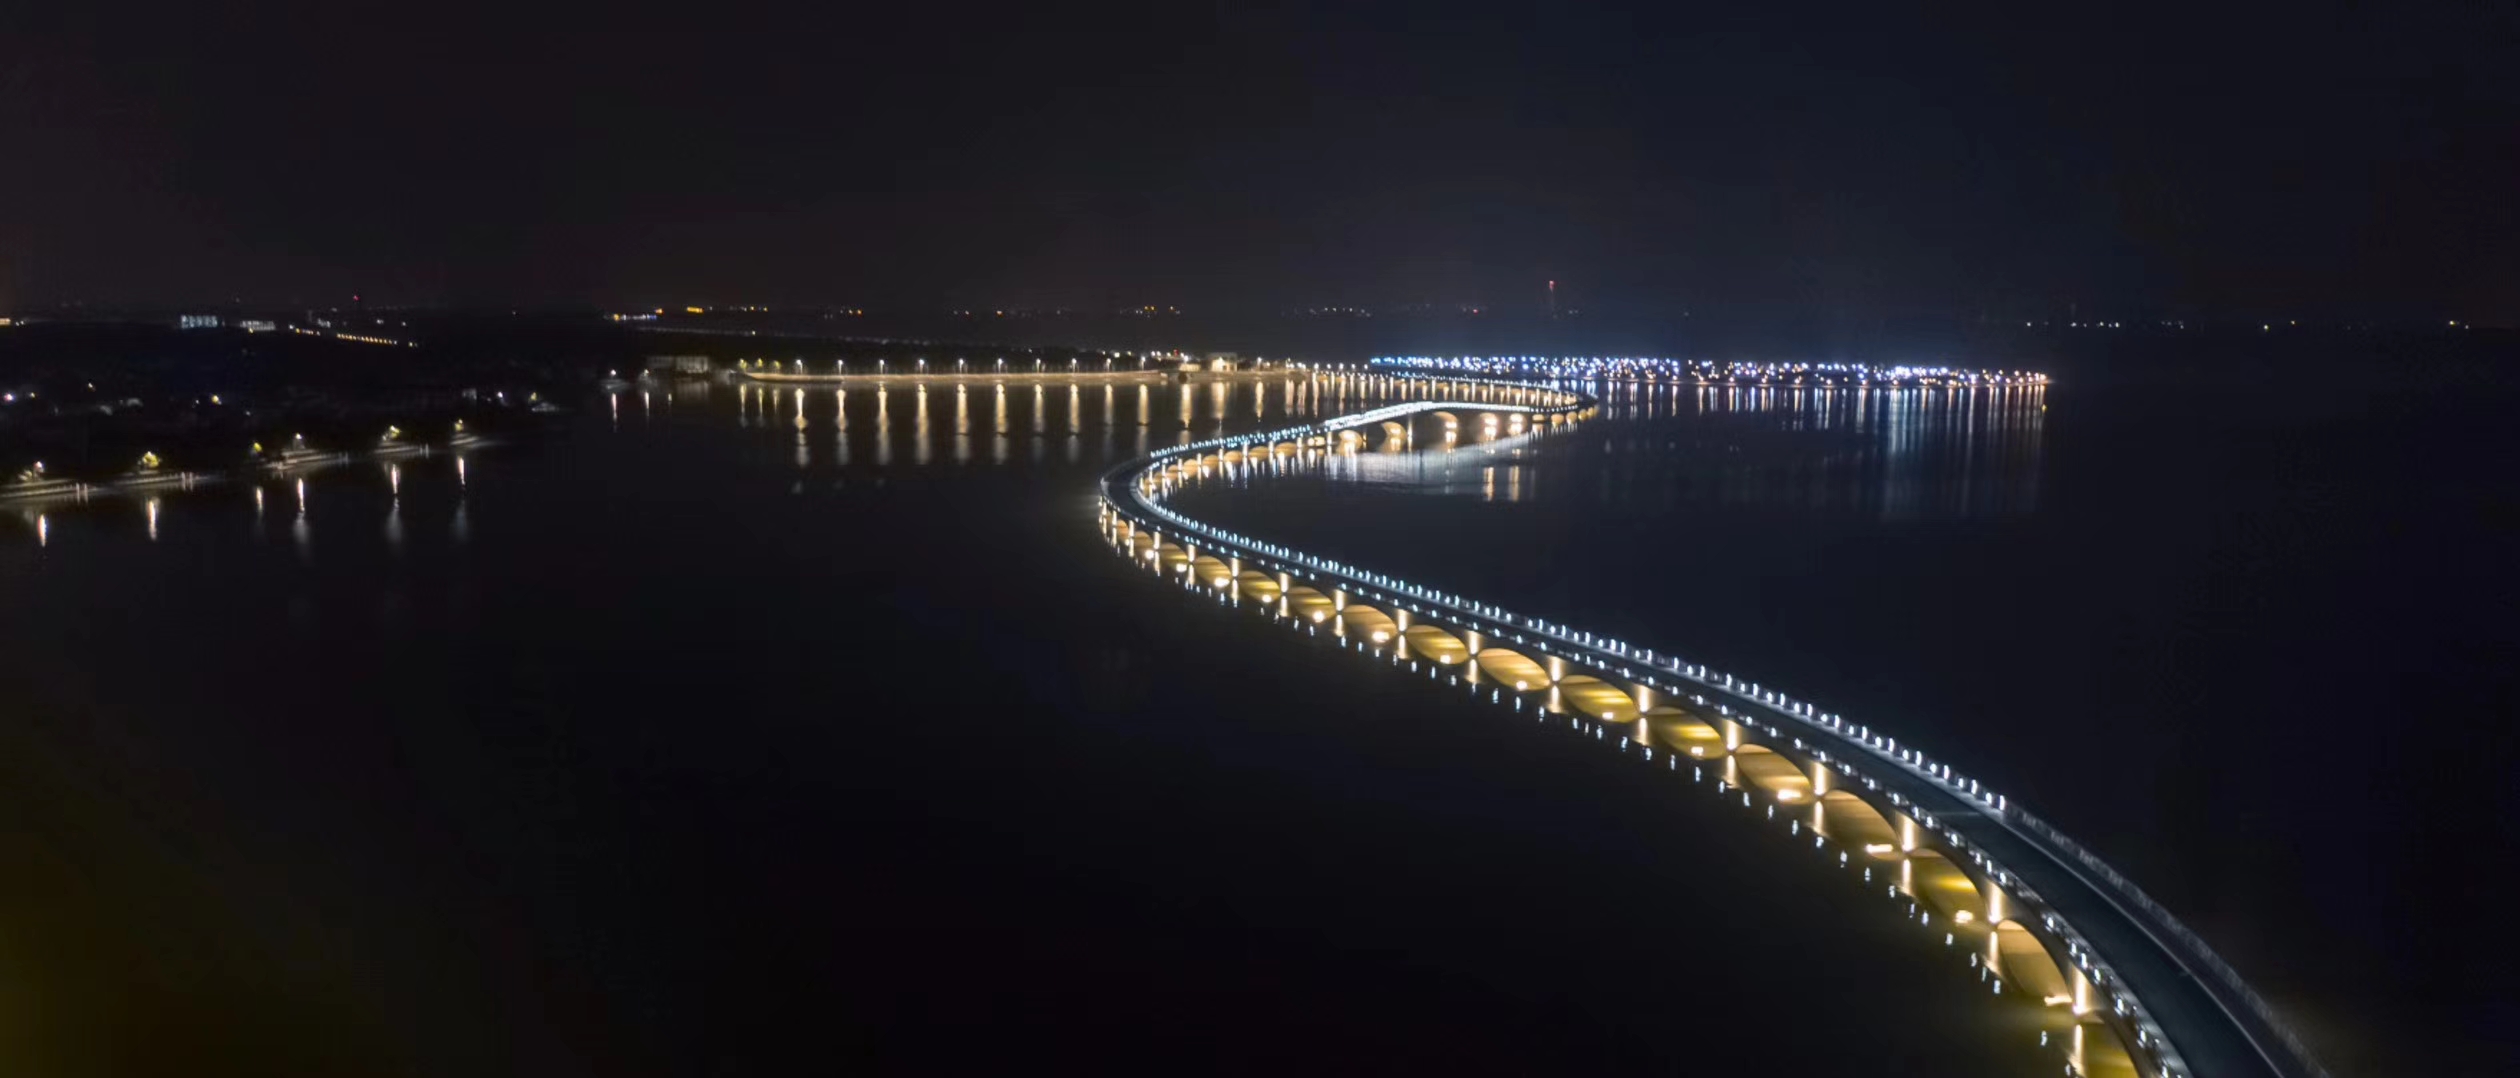 淀山湖彩虹桥图片